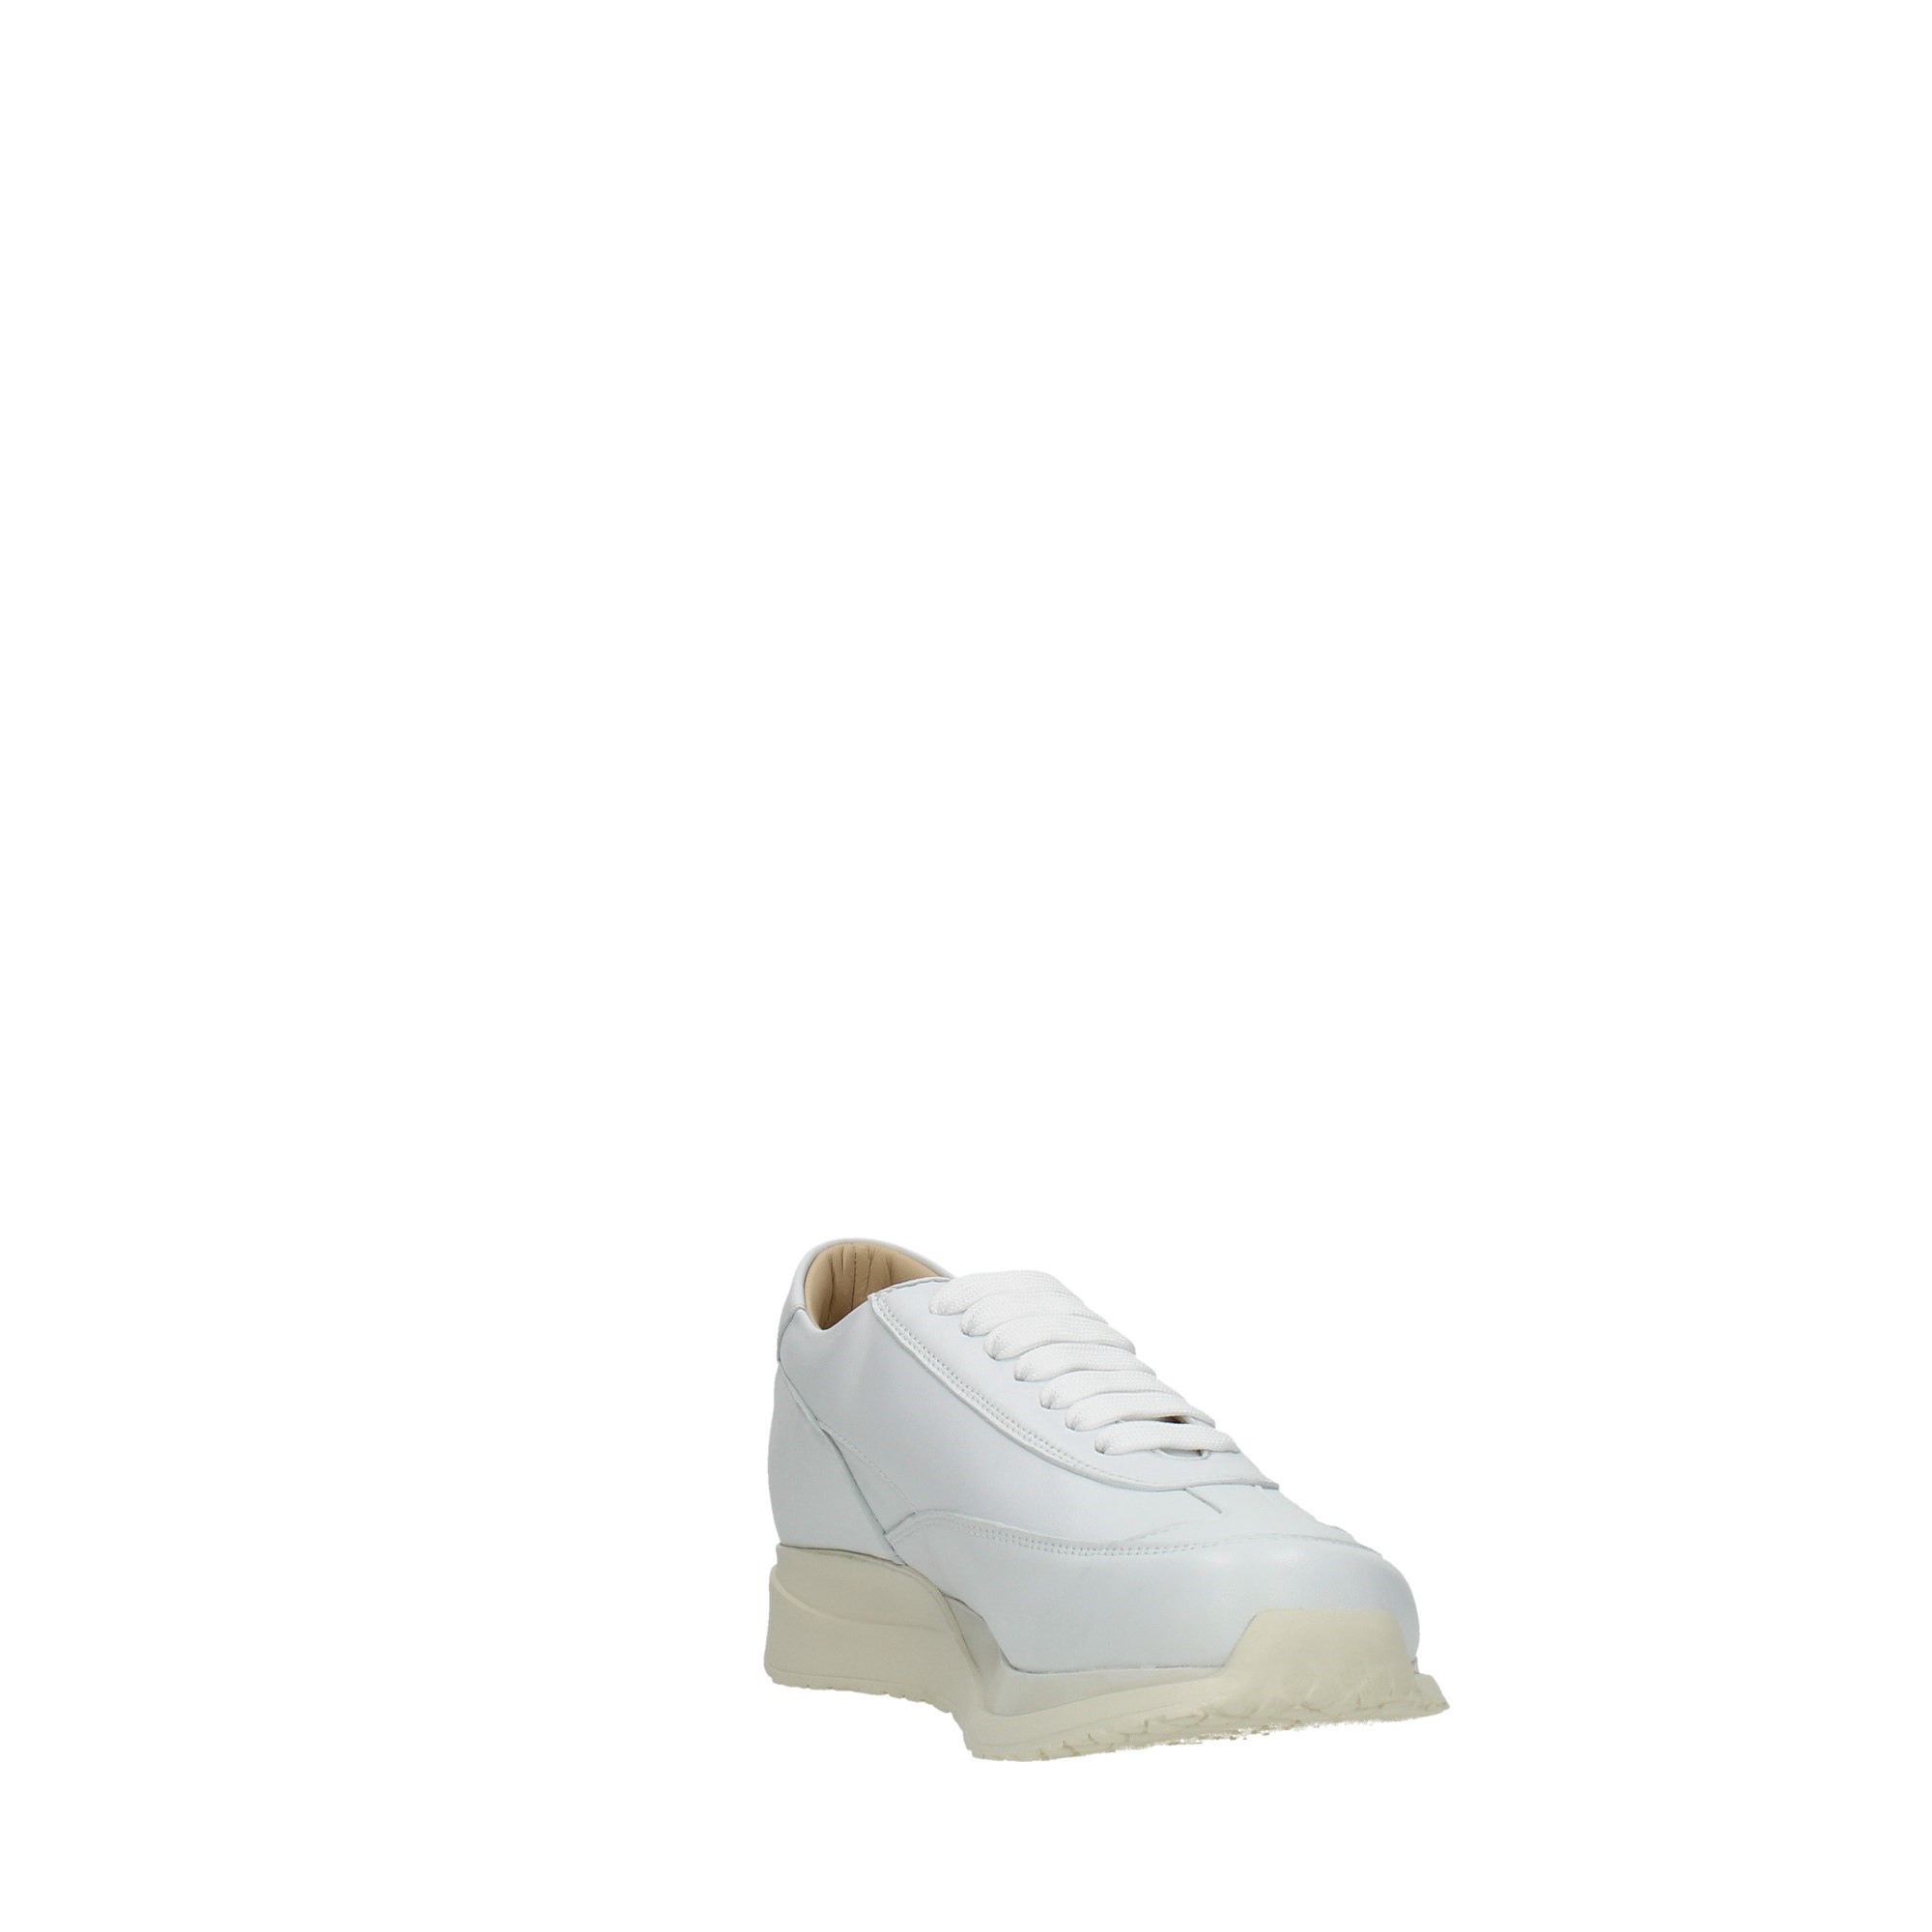 Paciotti Scarpe Donna Sneakers Bianco 65700